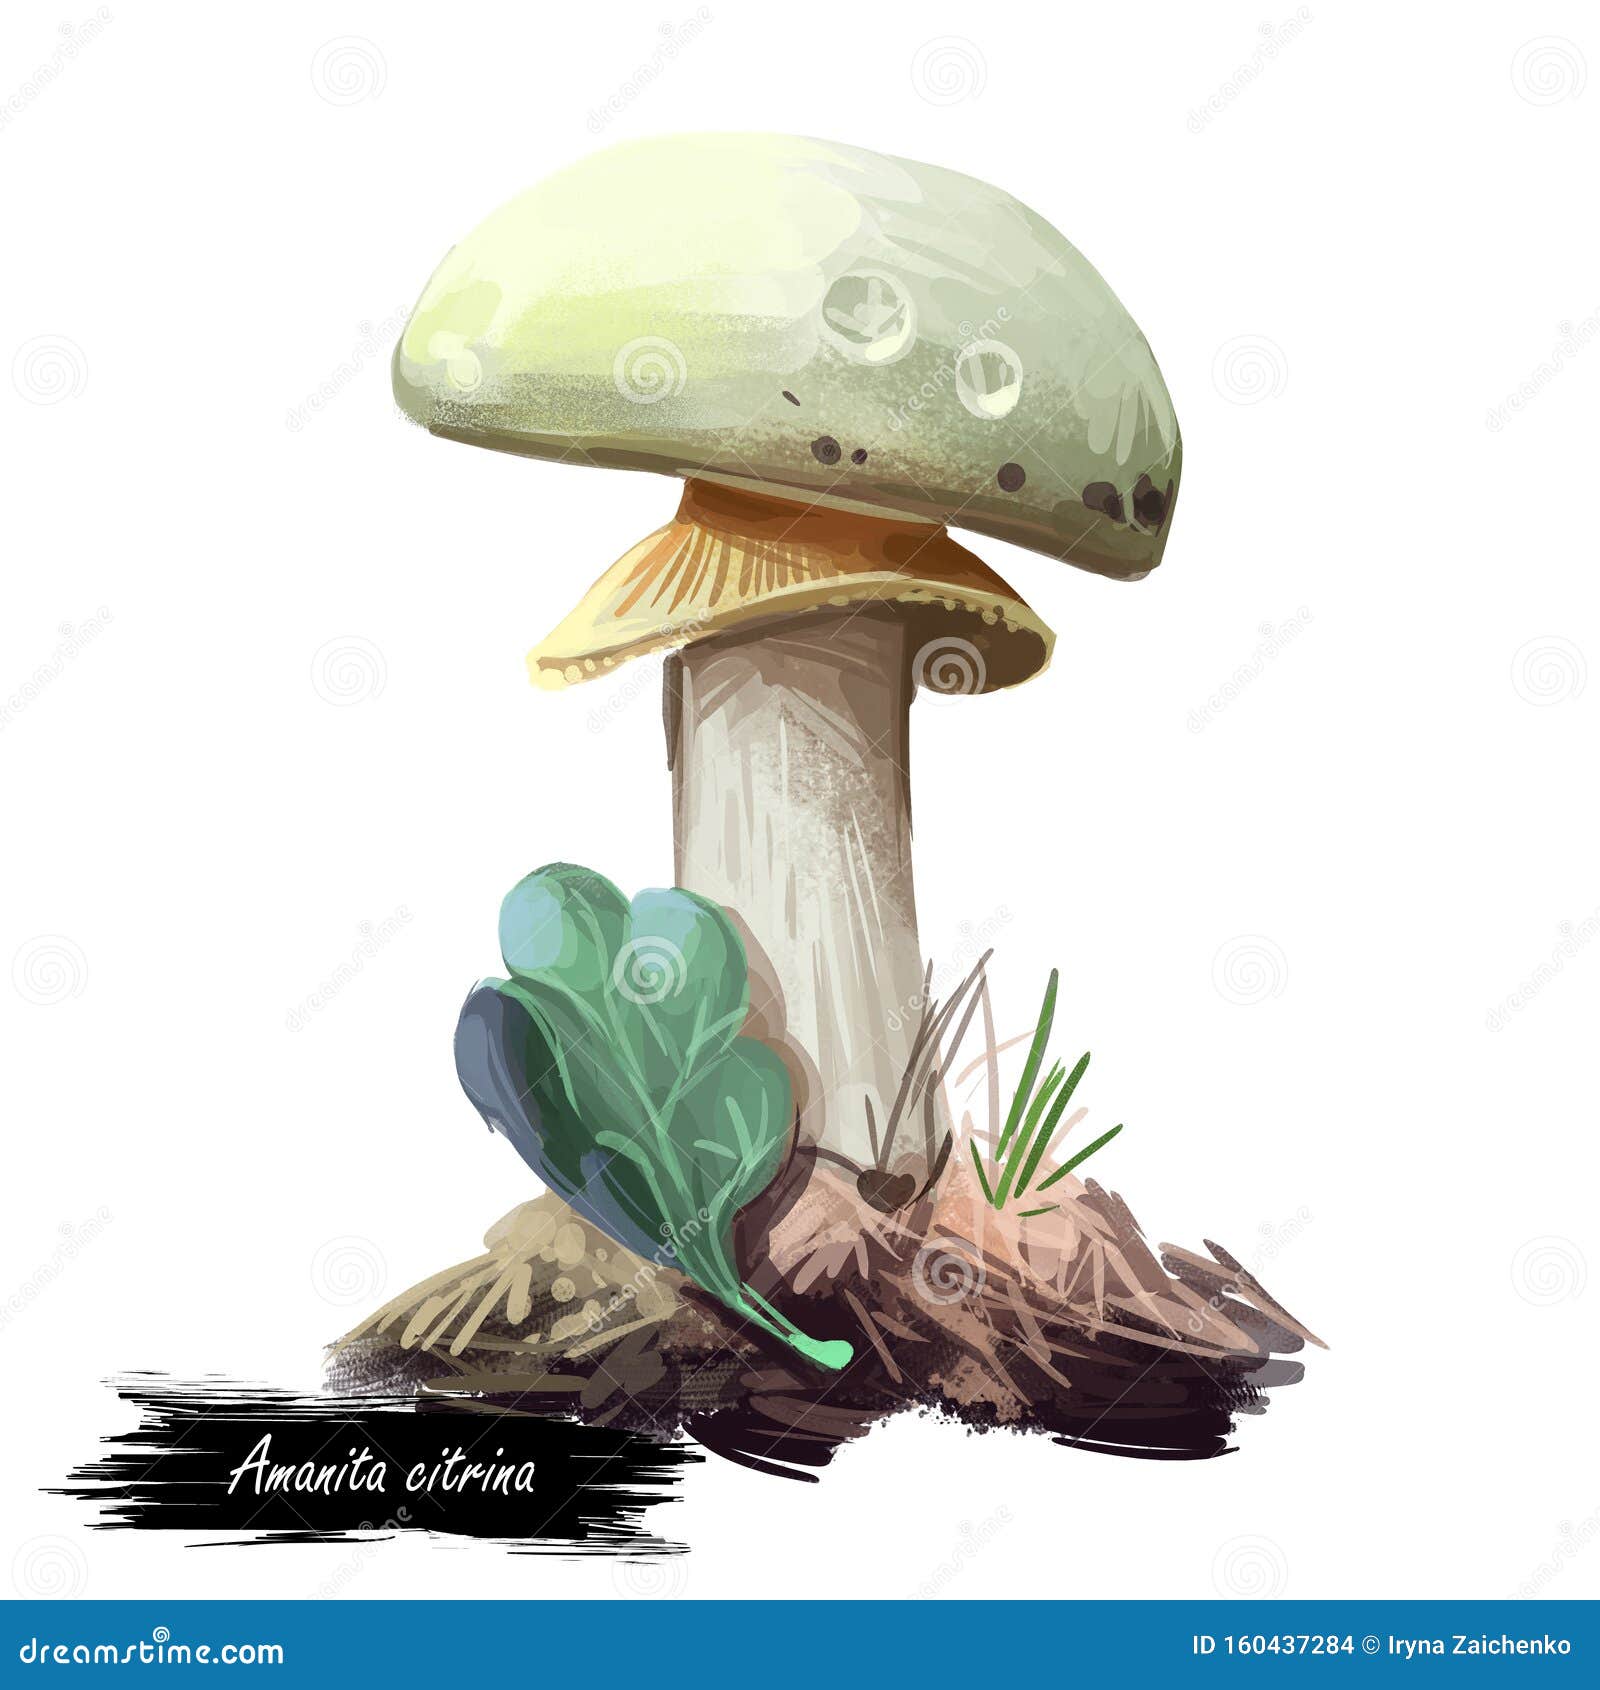 amanita citrina or mappa, false death cap mushroom closeup digital art . boletus has white cap, stem and volva.